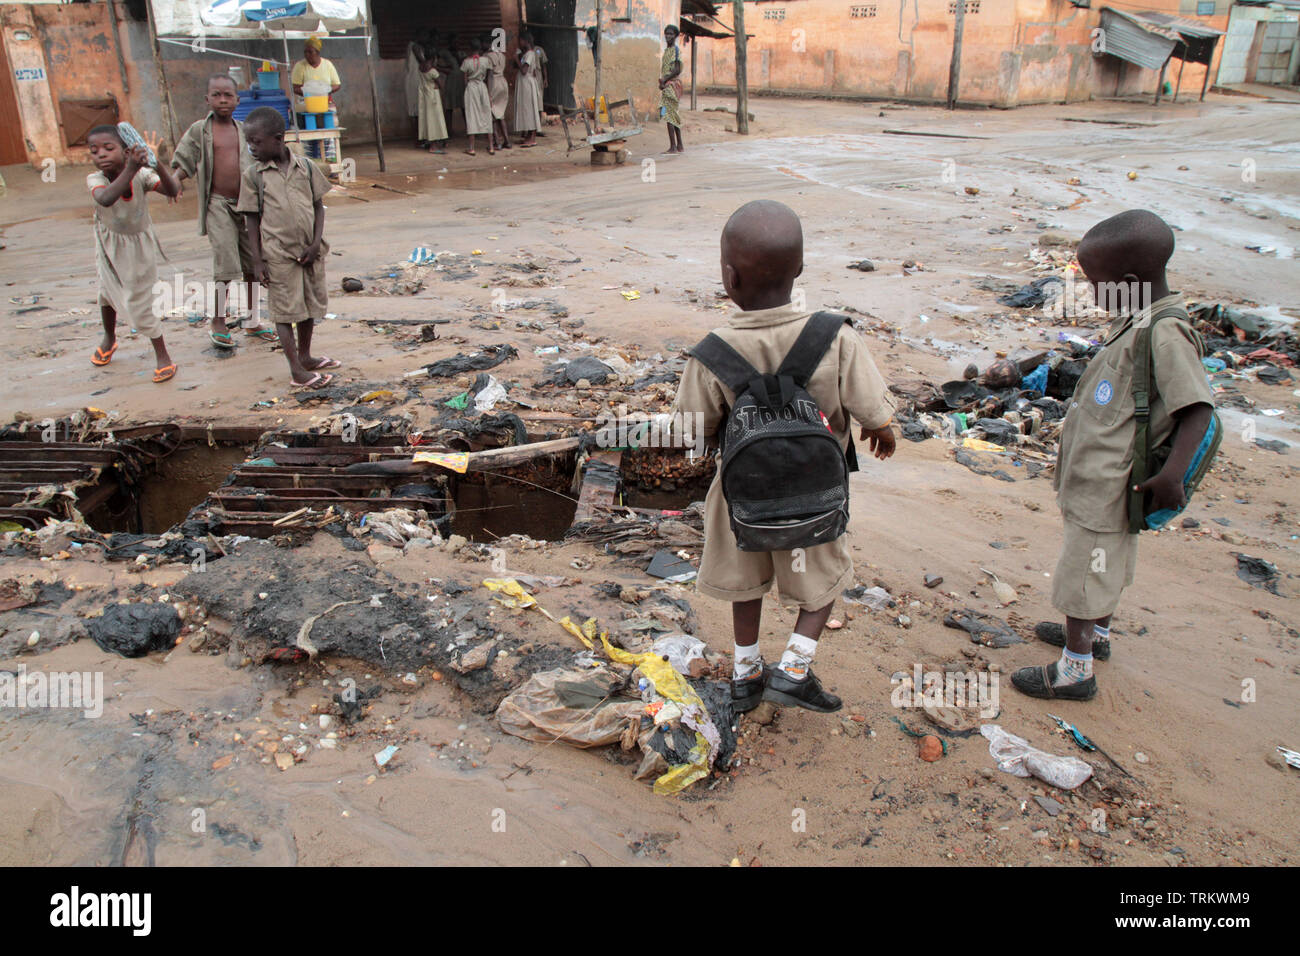 Écoulement dans une voirie d'onu quartier pauvre. La convenzione di Lomé. Il Togo. Afrique de l'Ouest. Foto Stock